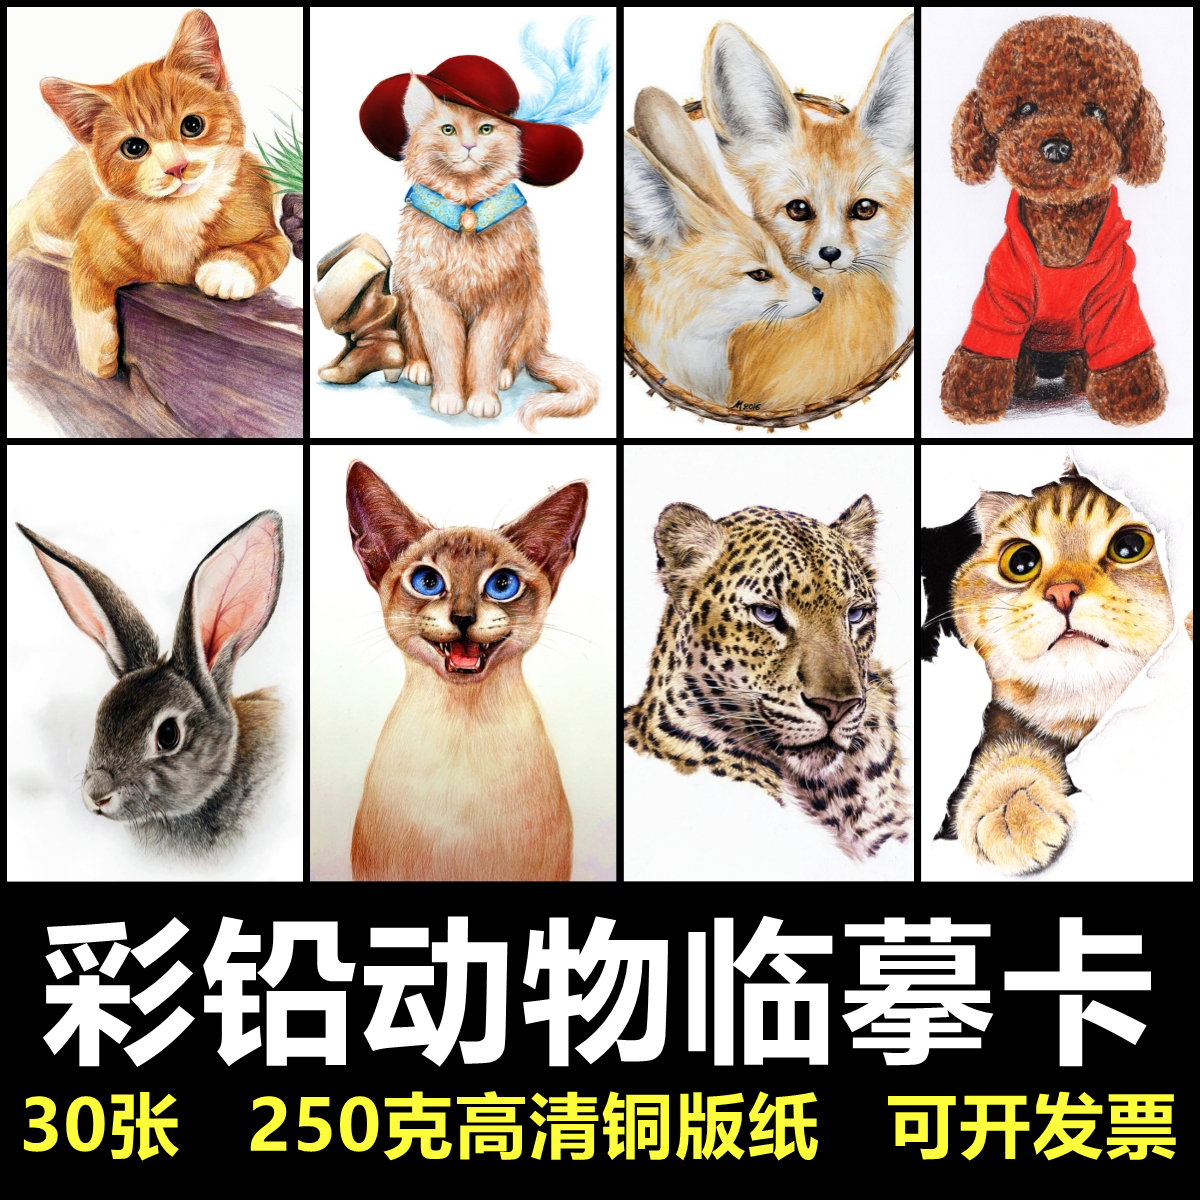 121少儿美术创意临摹卡片手绘范画彩铅猫狗动物30张考级画室素材